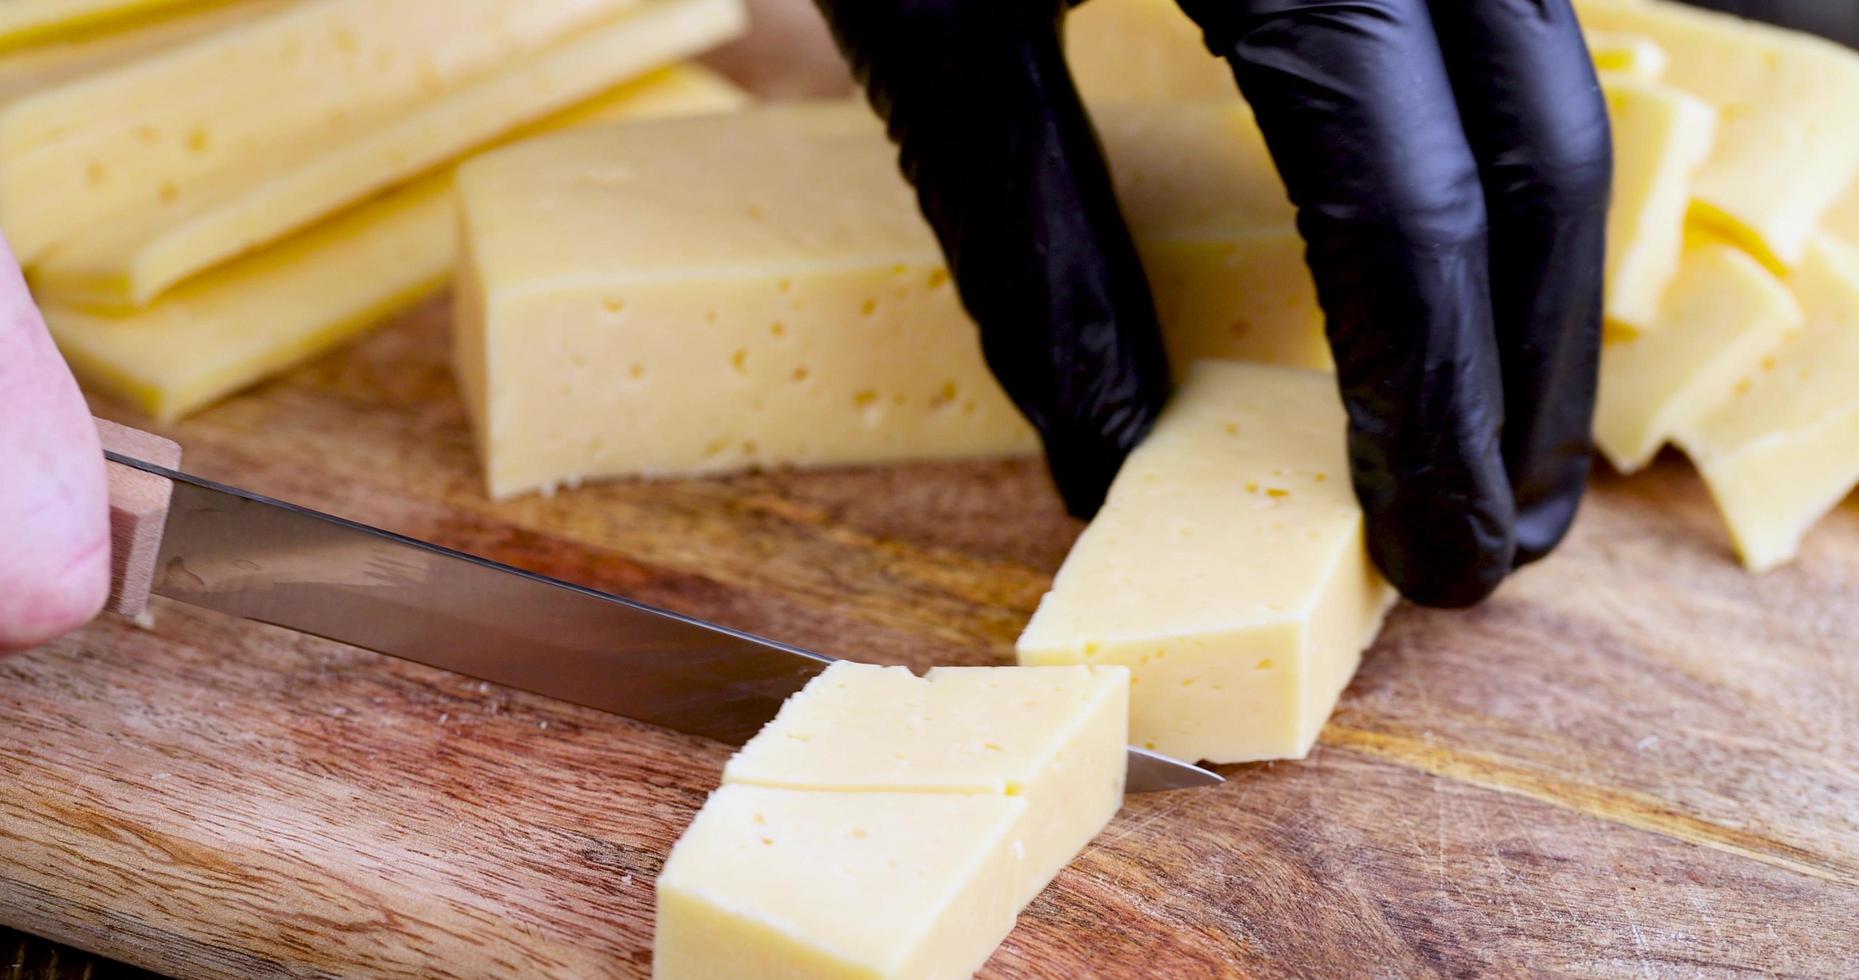 rebanar queso de leche de vaca maduro y delicioso foto